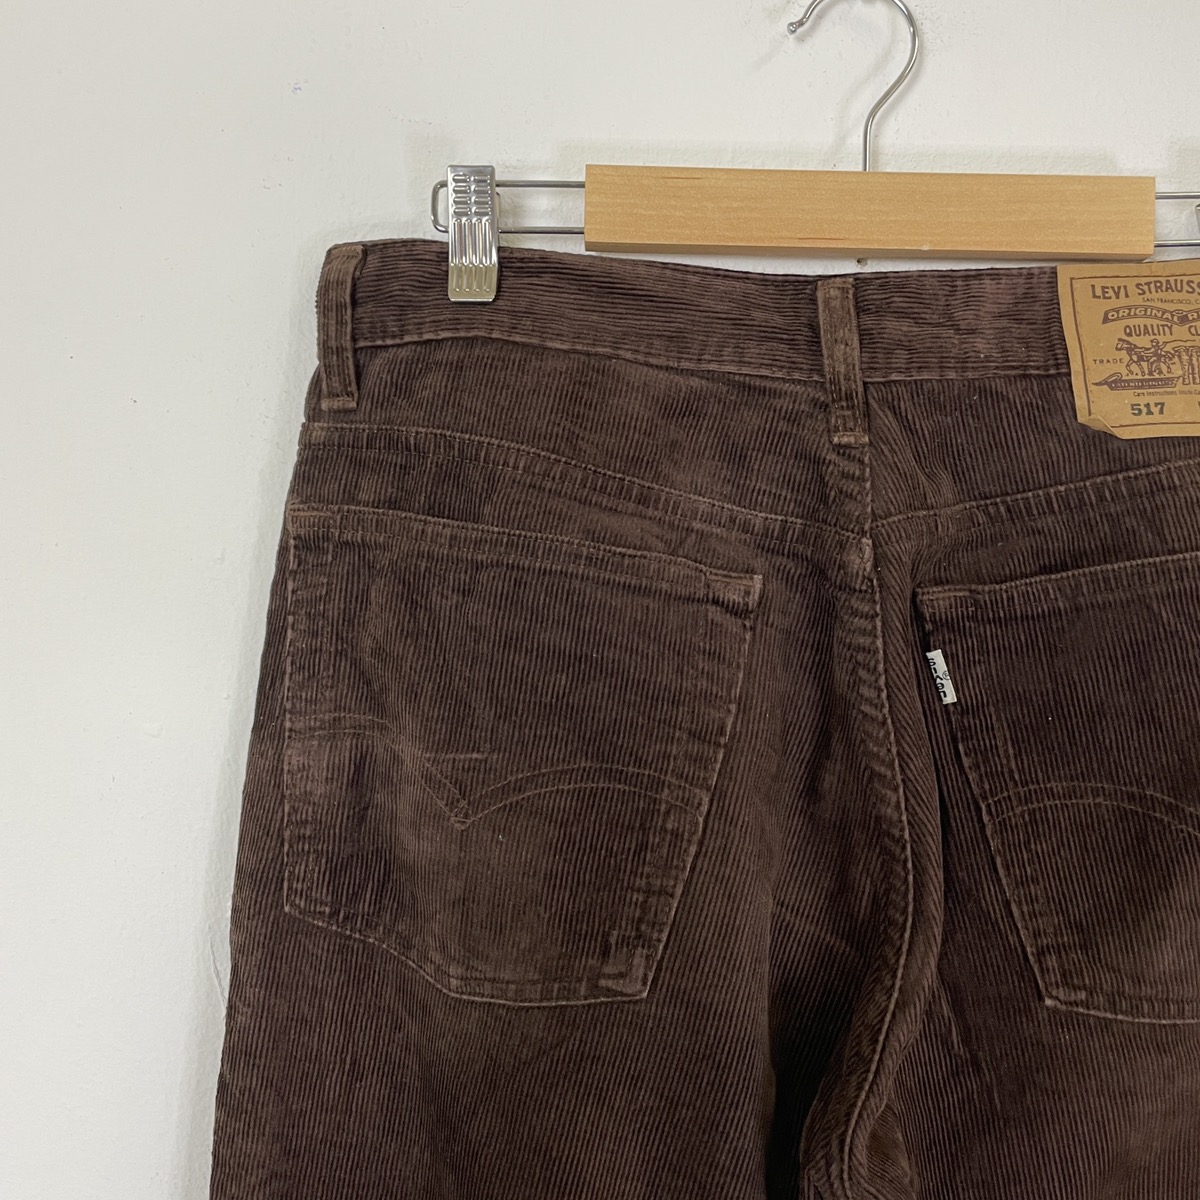 Vintage Levis Corduroy Pants - 8